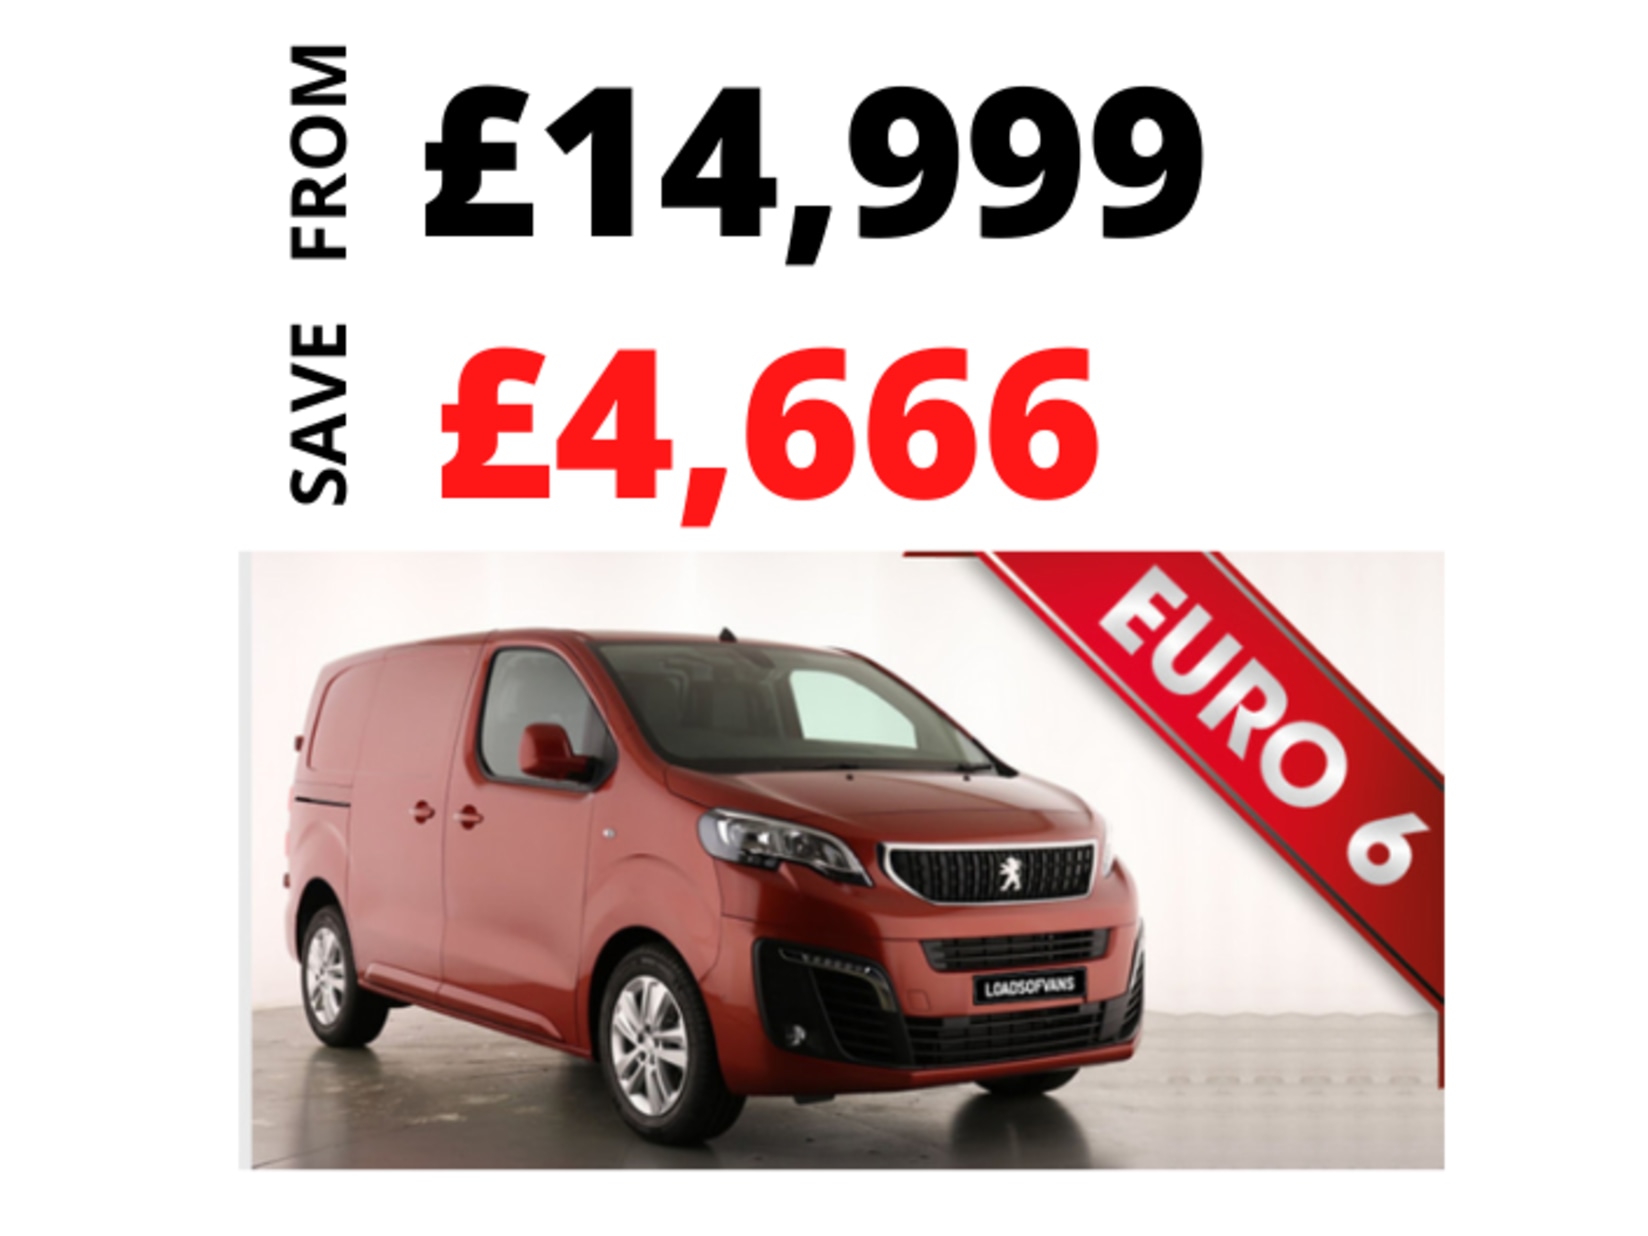 best deals on new vans